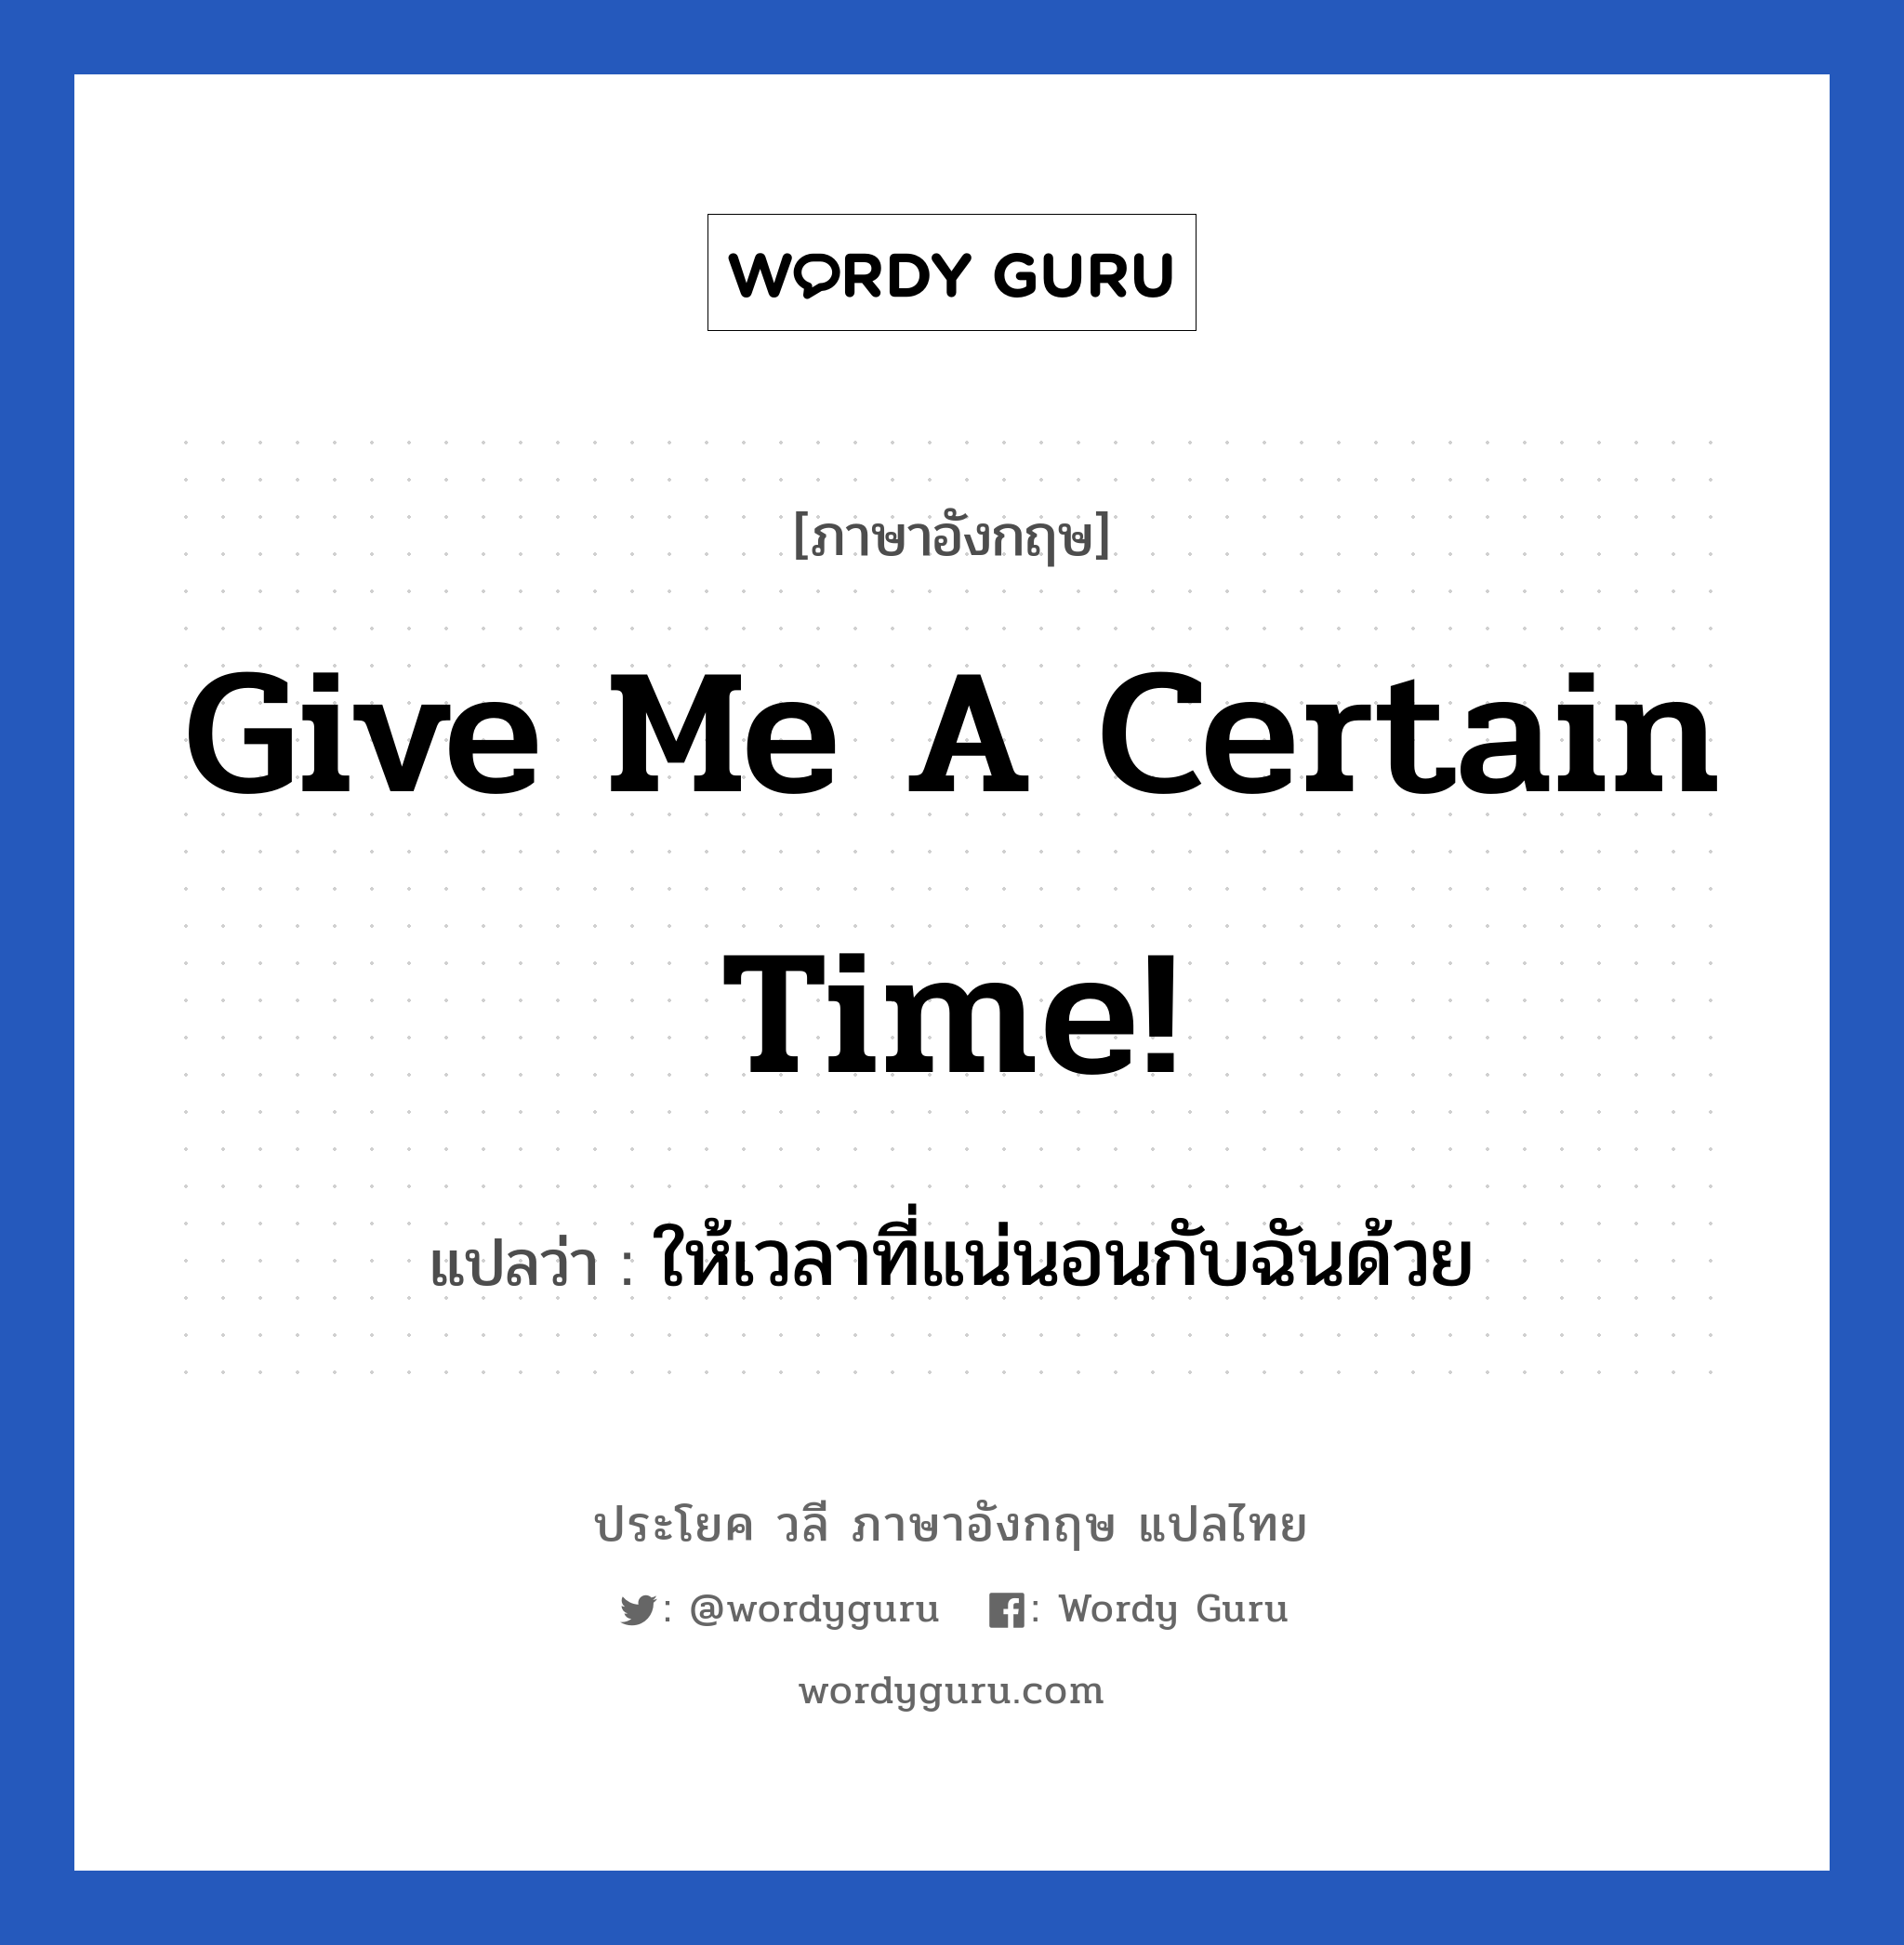 ให้เวลาที่แน่นอนกับฉันด้วย ภาษาอังกฤษ?, วลีภาษาอังกฤษ ให้เวลาที่แน่นอนกับฉันด้วย แปลว่า Give me a certain time!